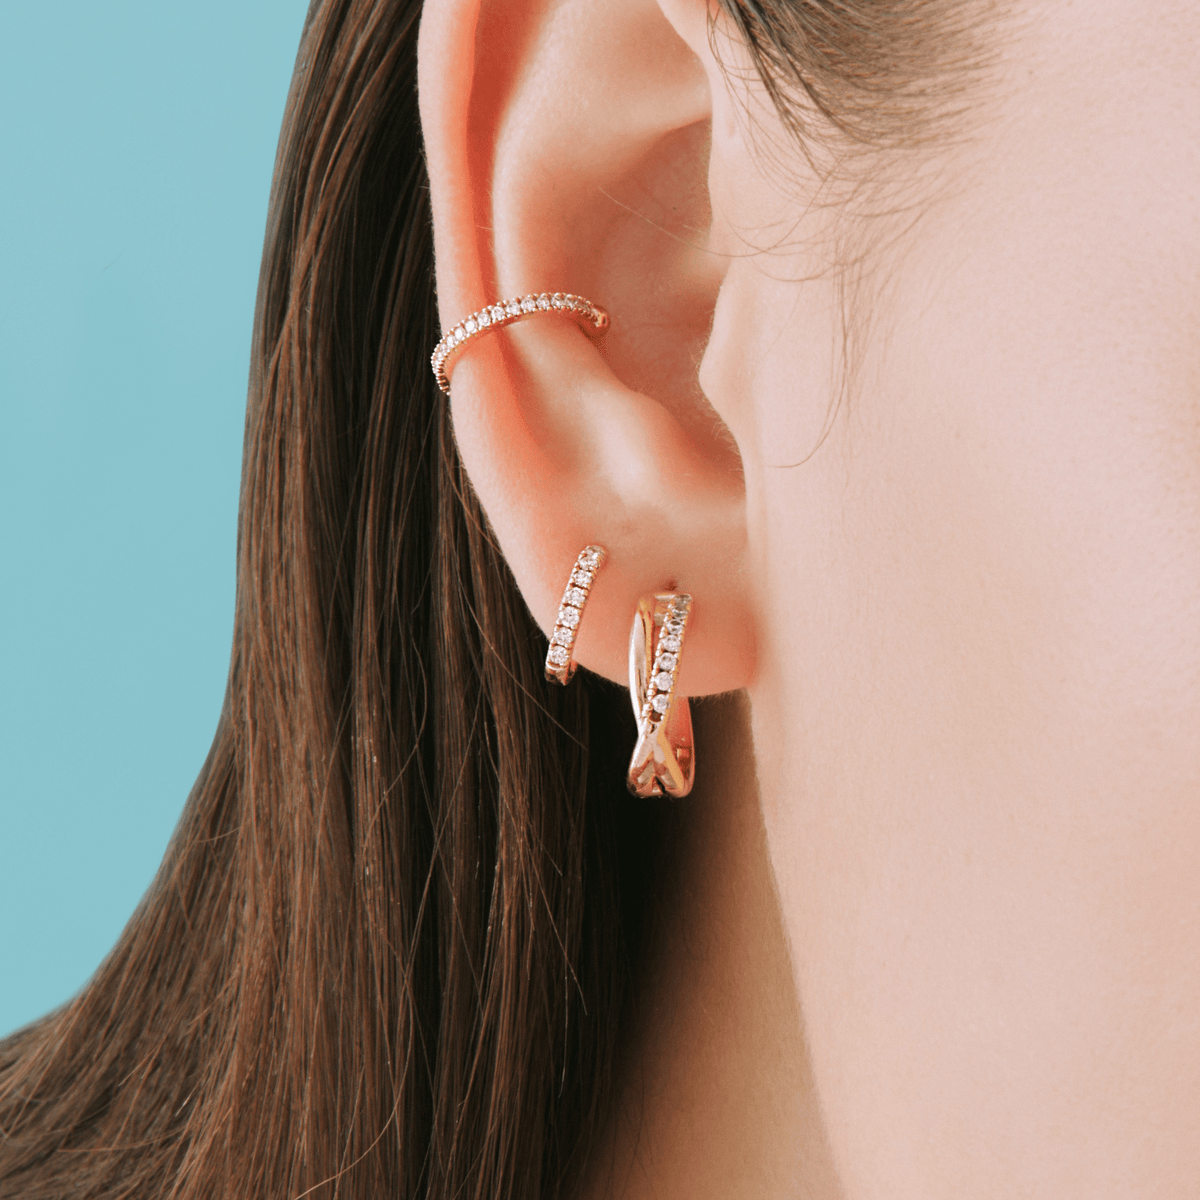 Dainty Ear Cuff No Piercing Double Band Ear Cuff Huggie -  Israel